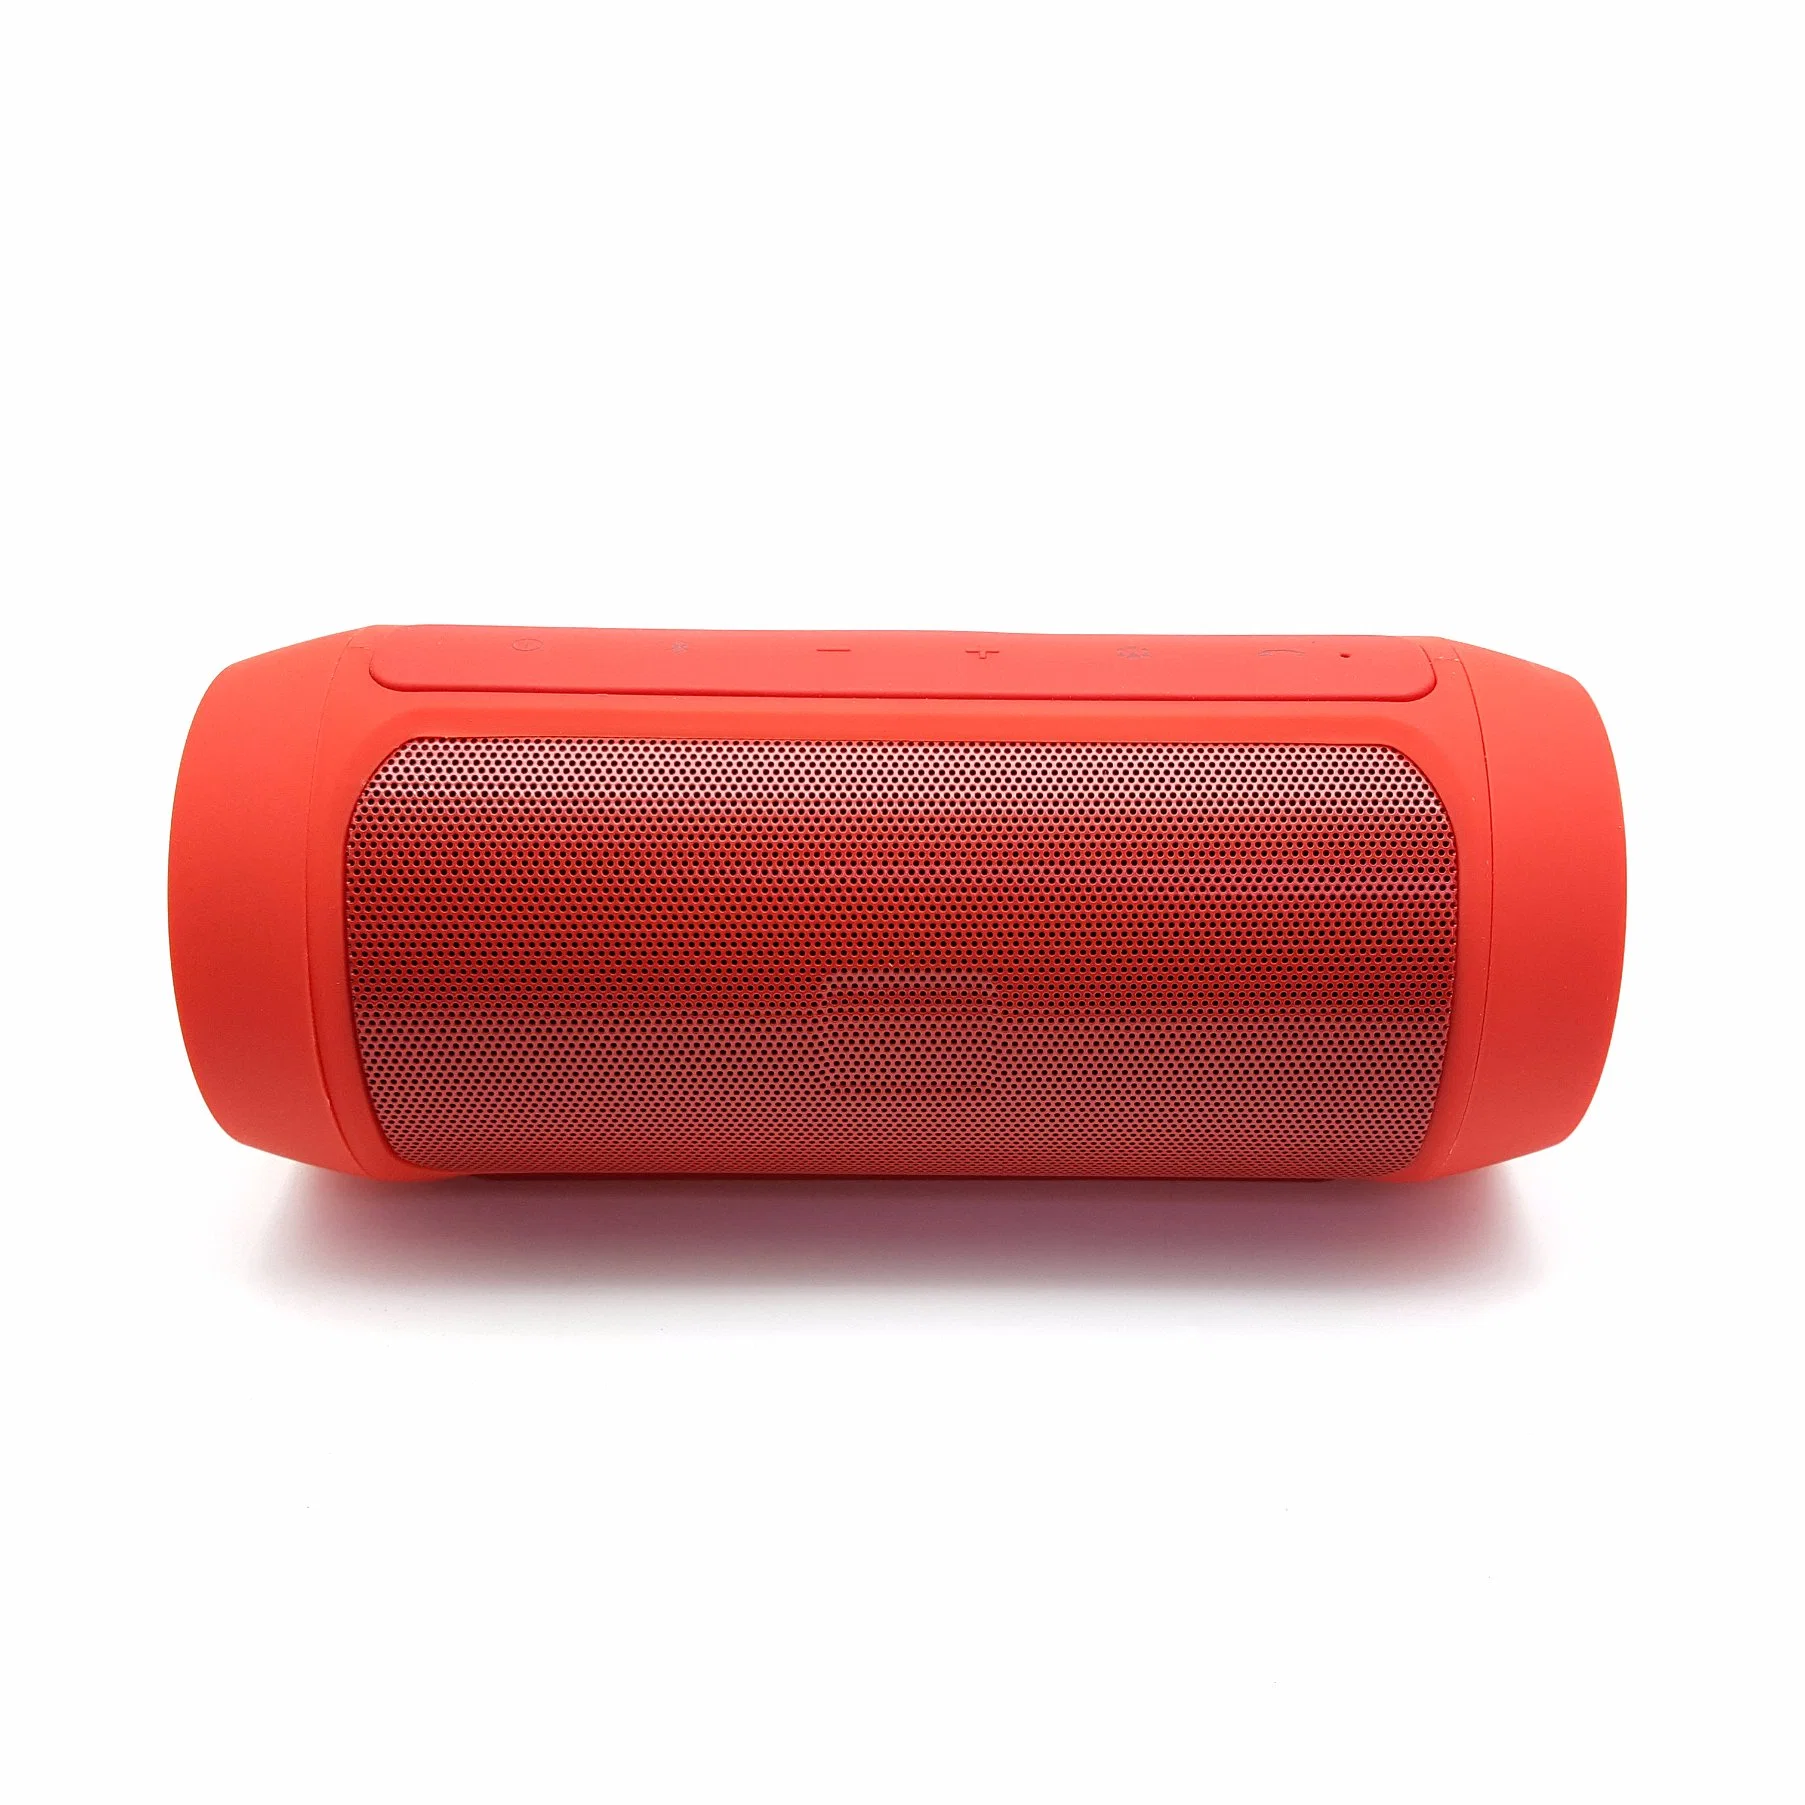 Популярные портативные АС Bluetooth Беспроводная музыкальная музыкальная система Handsfree FM-радио USB с бесплатным логотипом